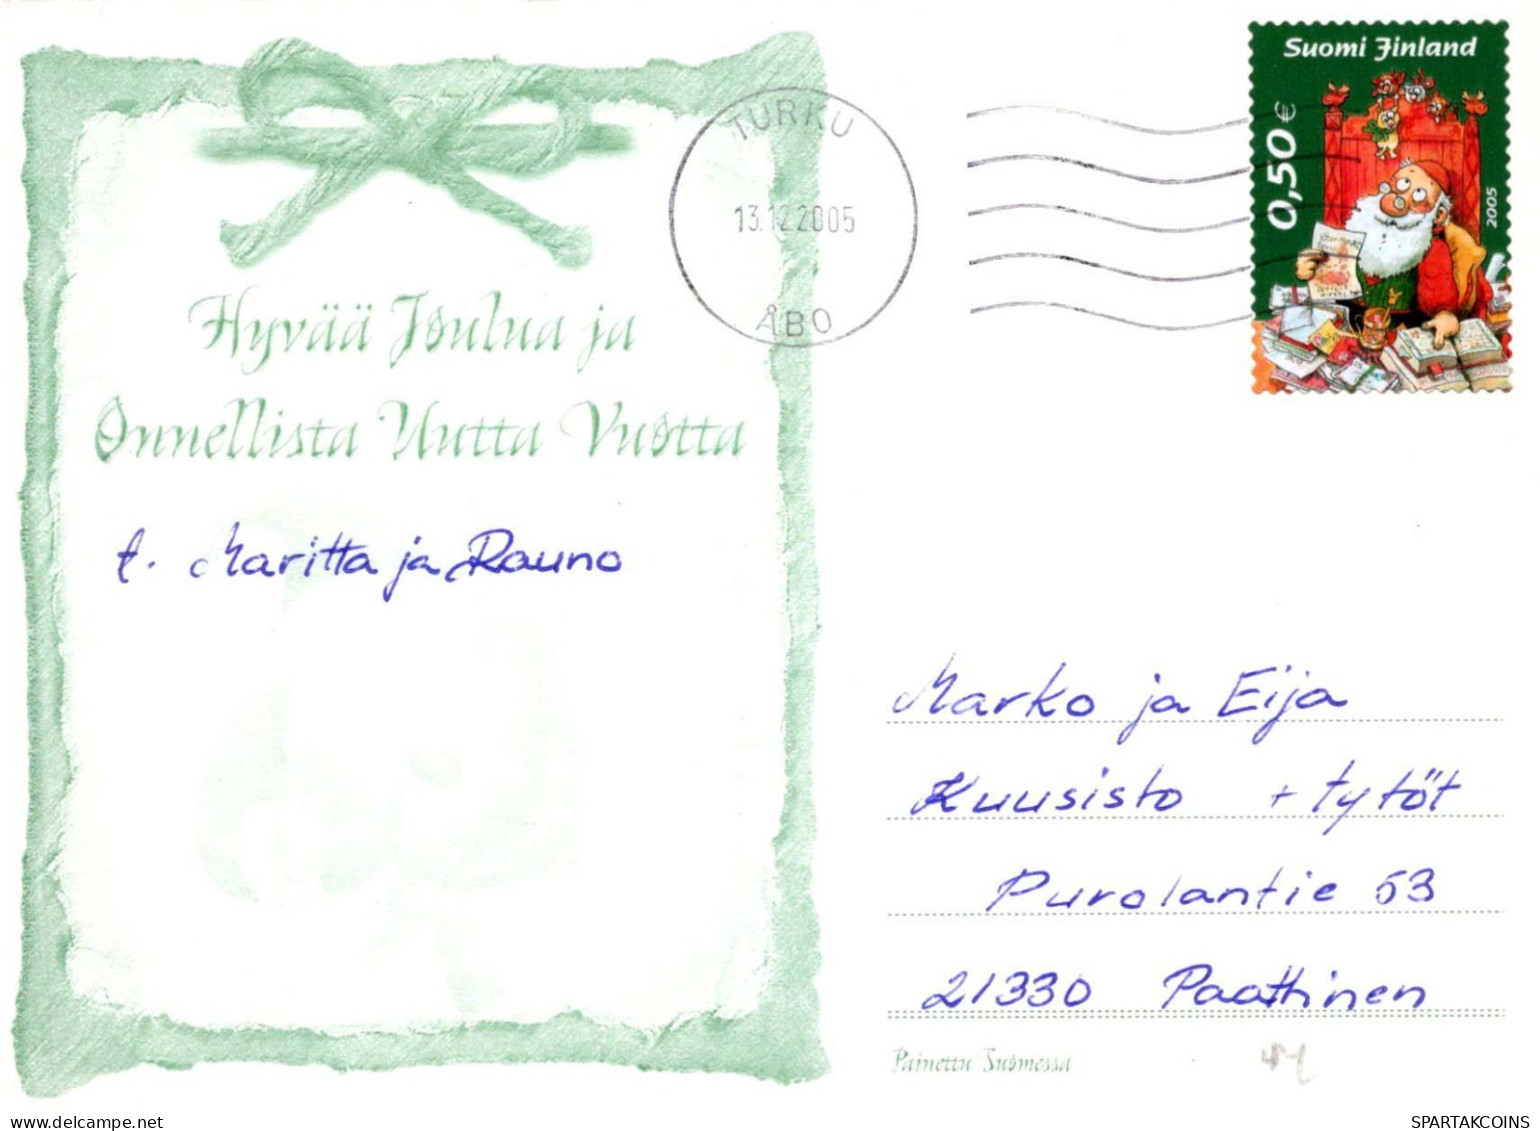 PAPÁ NOEL Feliz Año Navidad Vintage Tarjeta Postal CPSM #PBL111.ES - Kerstman